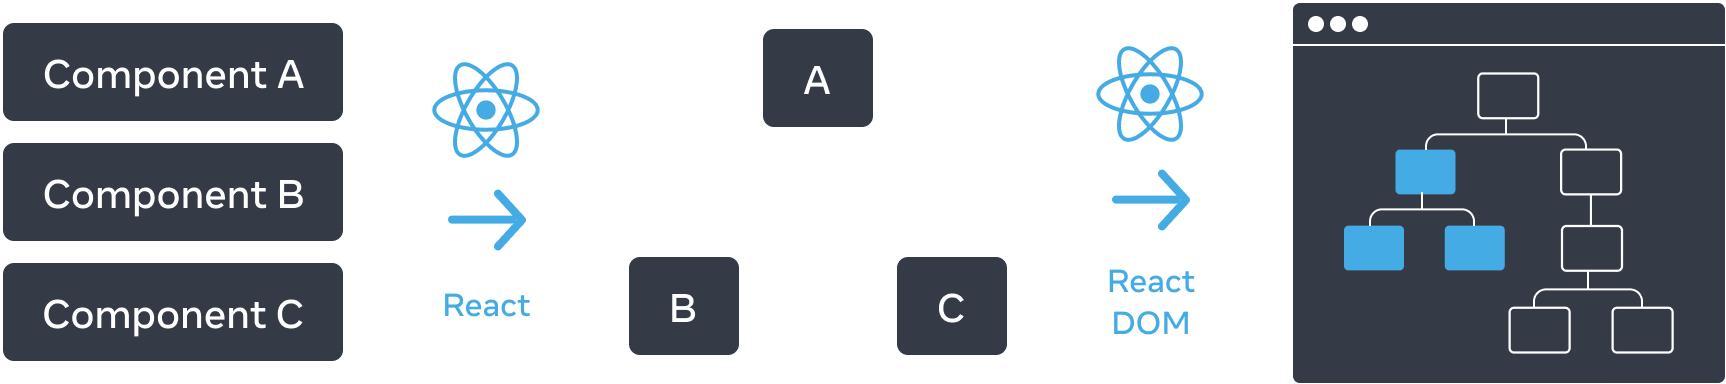 Схема с тремя горизонтально расположенными секциями. В первом разделе вертикально расположены три прямоугольника: 'Component A', 'Component B', и 'Component C'. Переход к следующей панели — это стрелка с логотипом React сверху и надписью 'React'. Средний раздел содержит дерево компонентов с корнем, обозначенным 'A', и двумя дочерними элементами, обозначенными 'B' и 'C'. Переход к следующему разделу снова осуществляется с помощью стрелки с логотипом React сверху и надписью 'React'. Последний, третий раздел, представляет собой каркас браузера, содержащий дерево из 8 узлов, в котором выделено только подмножество (с указанием поддерева из среднего раздела).